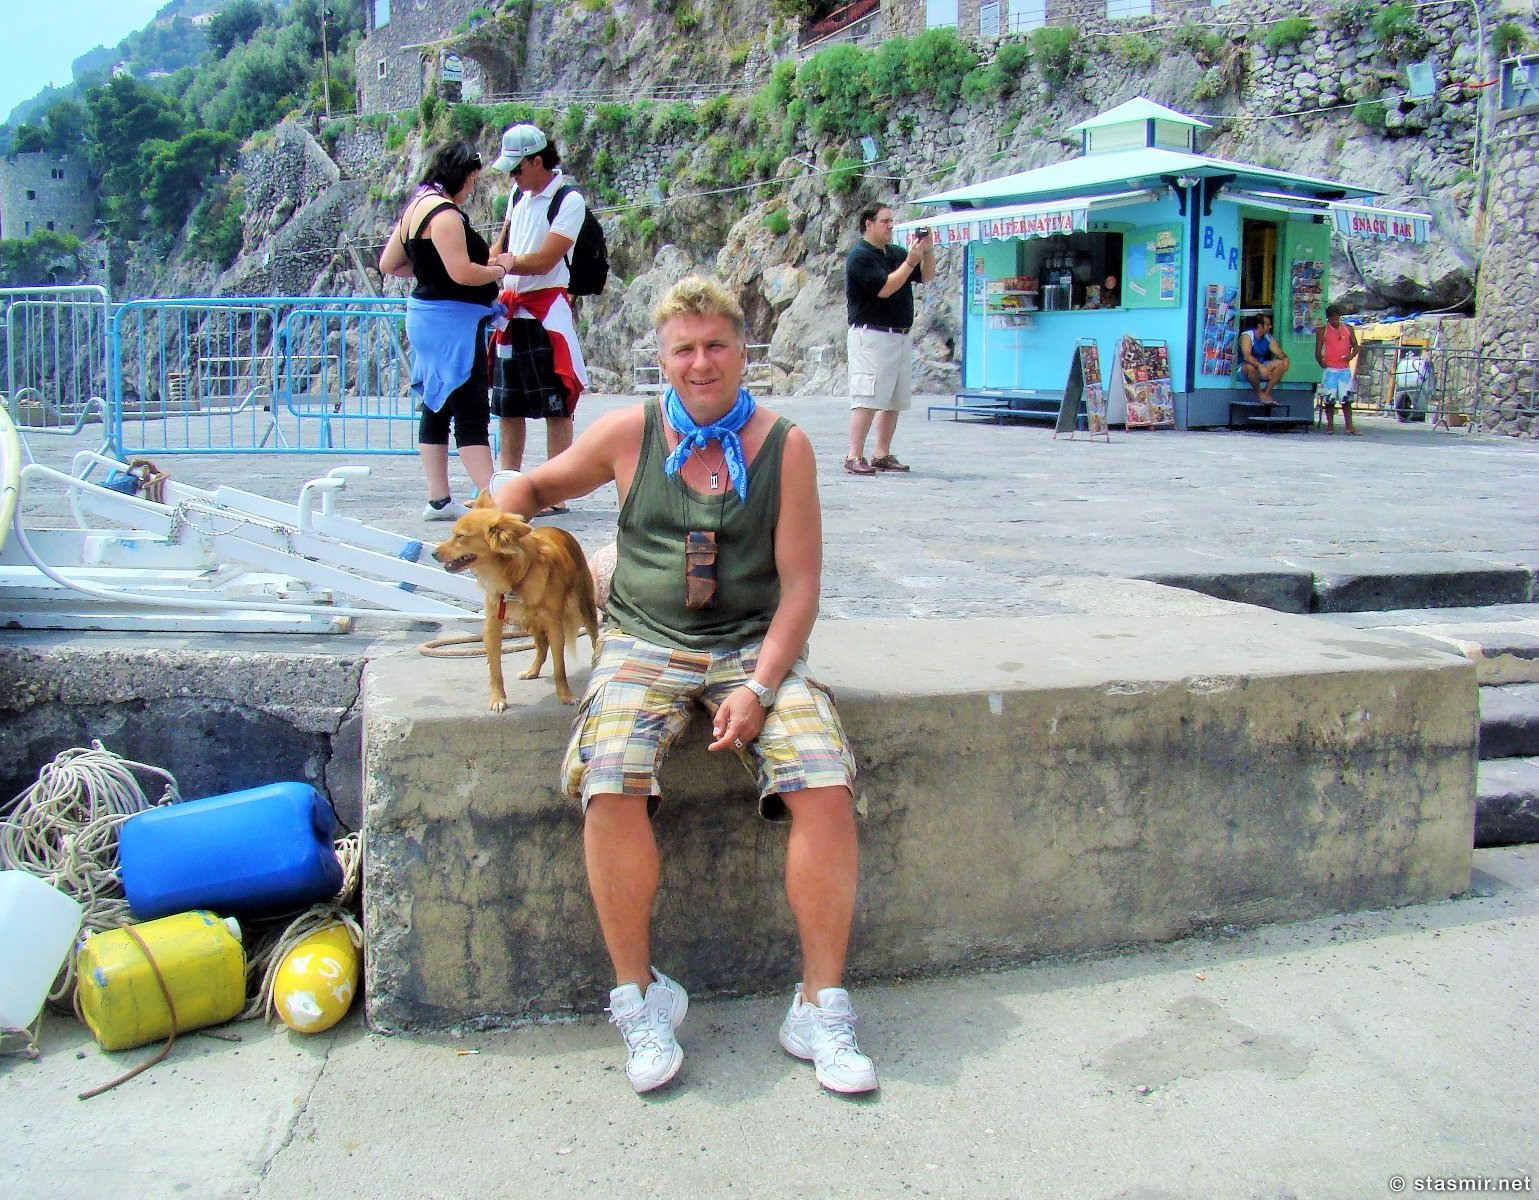 Стасмир на причале с собакой ожидает шаланды, полной кефали, в рыбацкой деревне Позитано (итал. Positano), фото Стасмир, photo Stasmir